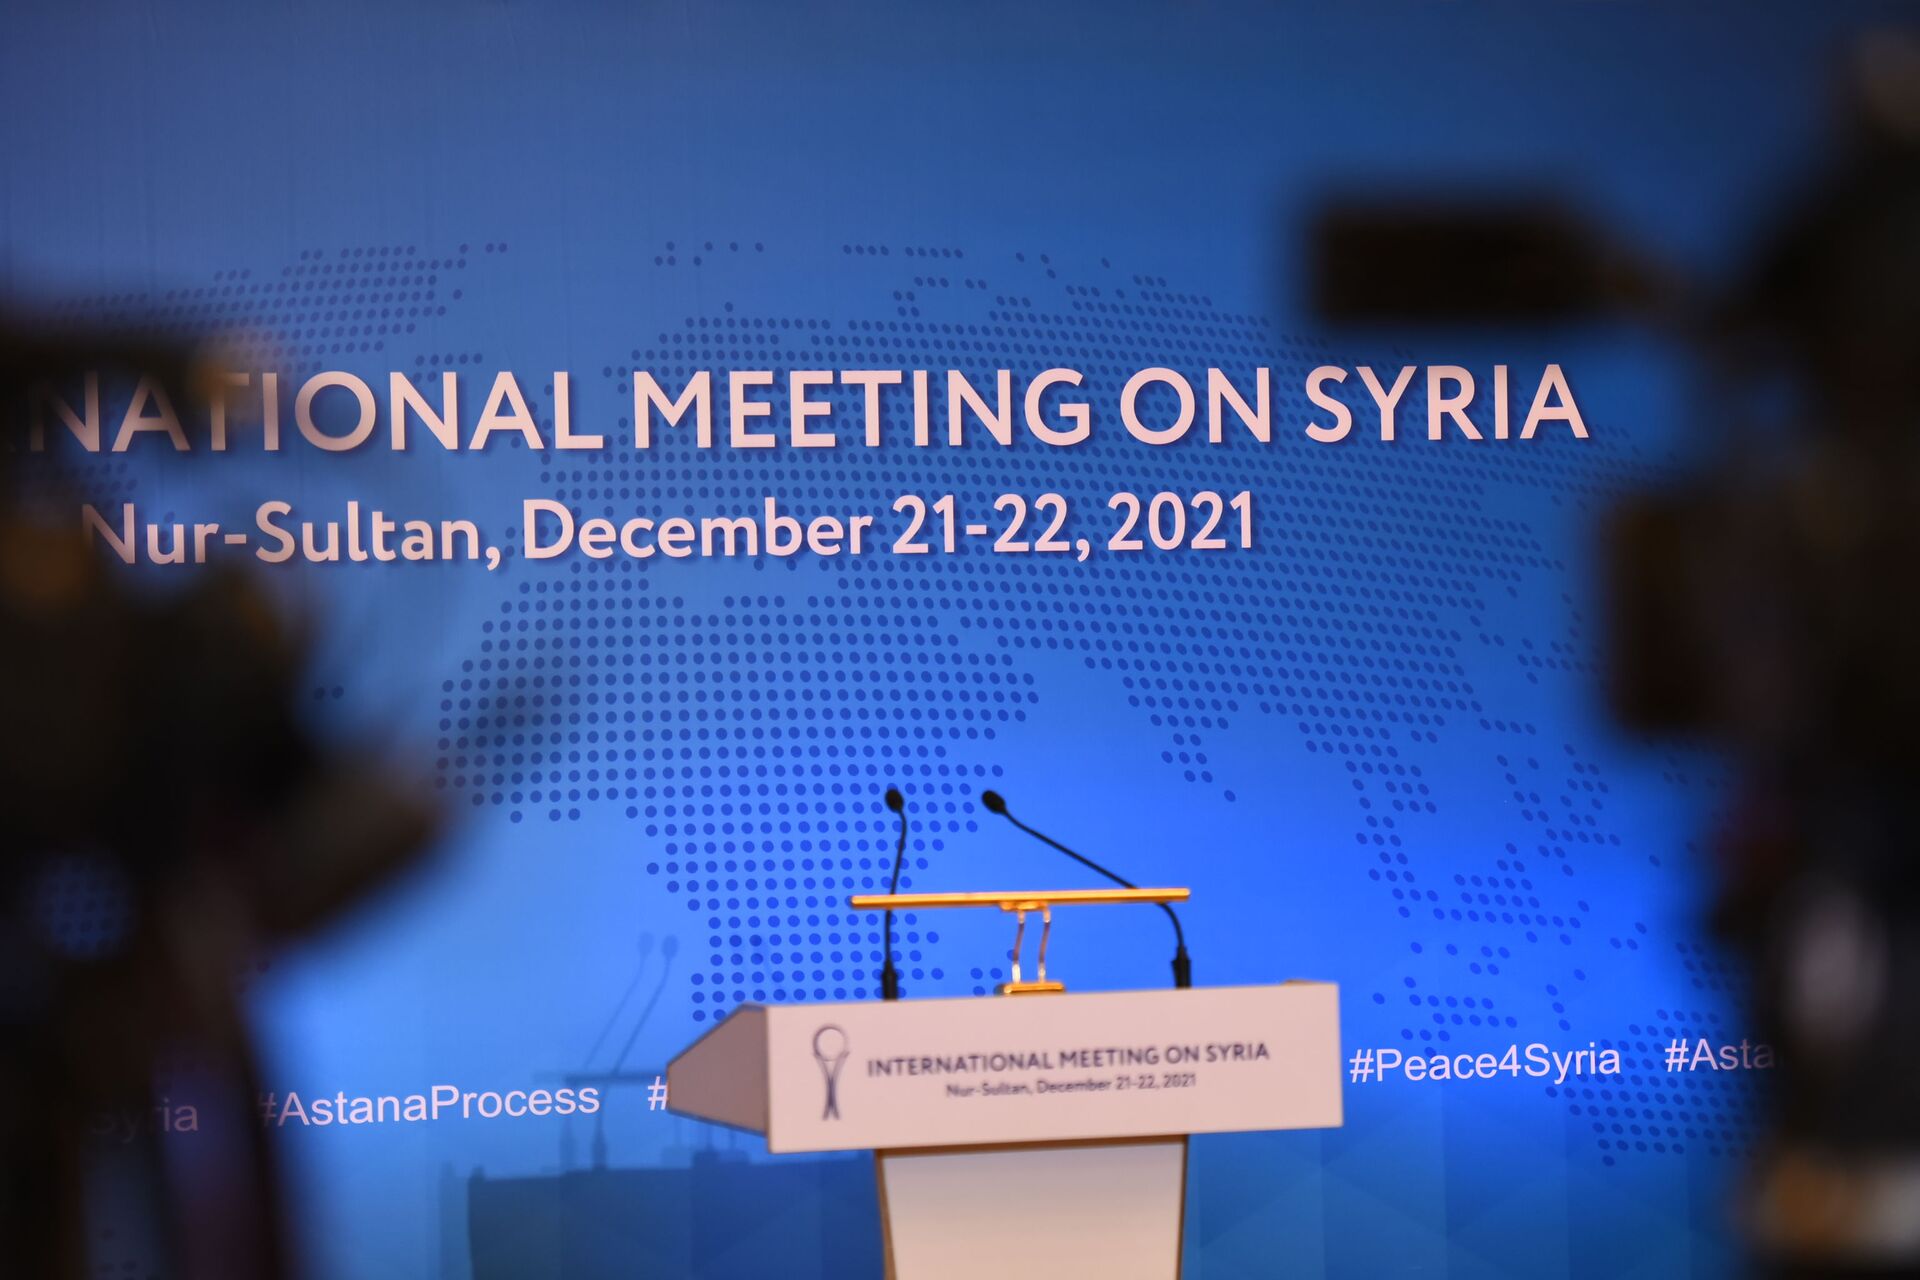  В Нур-Султане подвели итоги очередного, 17-го раунда переговоров по Сирии - Sputnik Казахстан, 1920, 01.02.2022